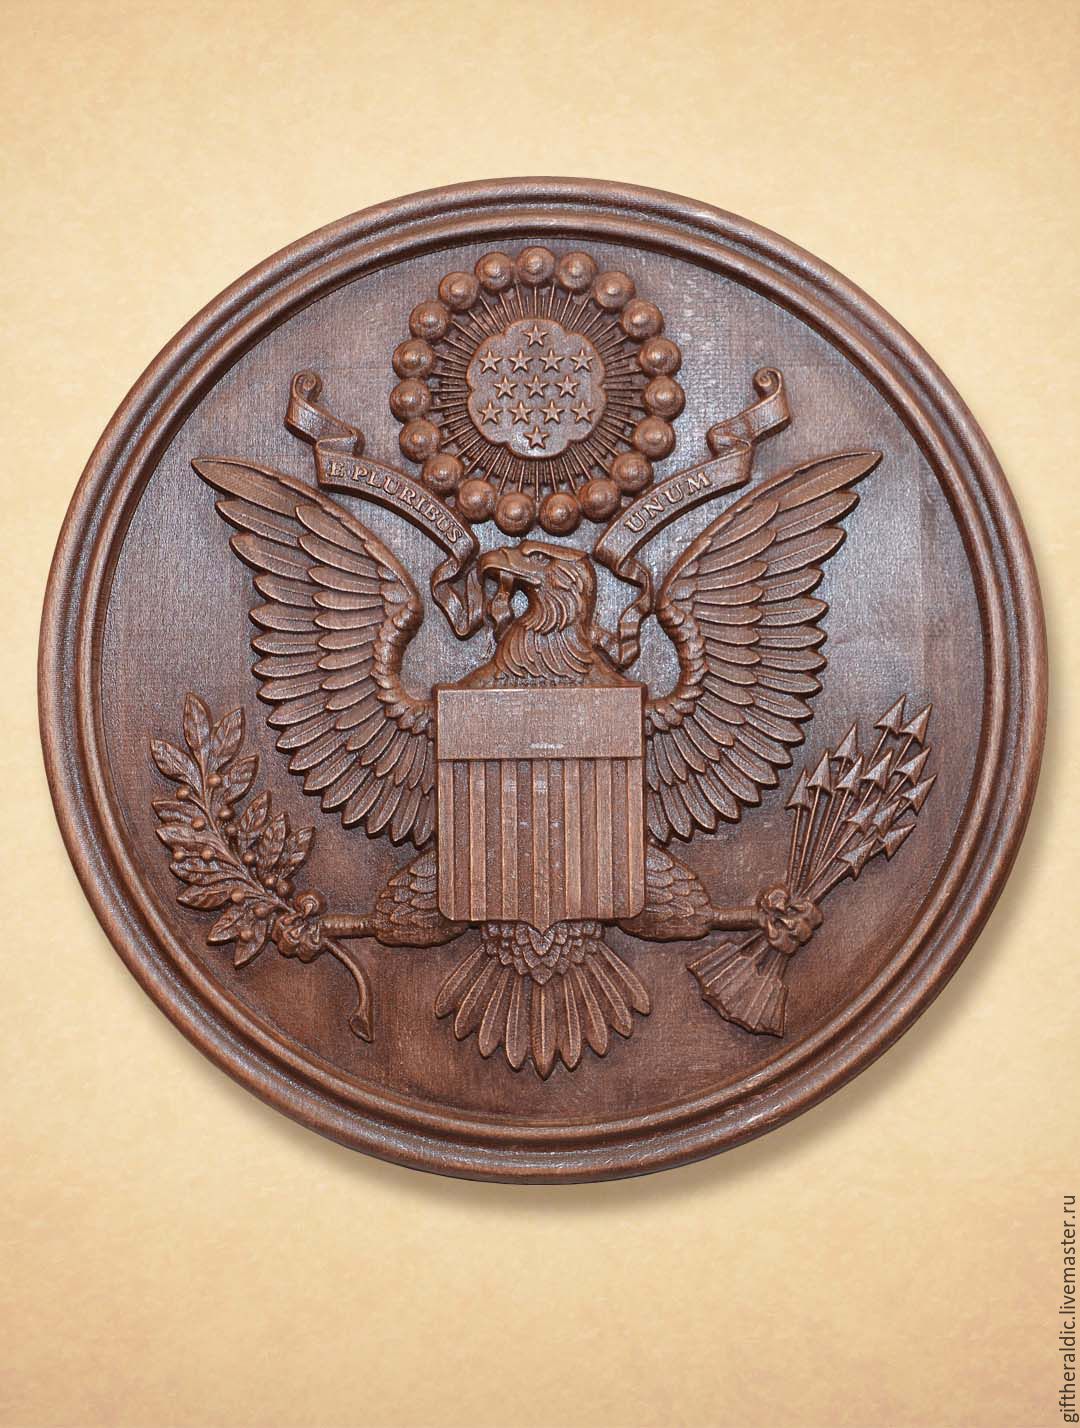 Фото американский герб